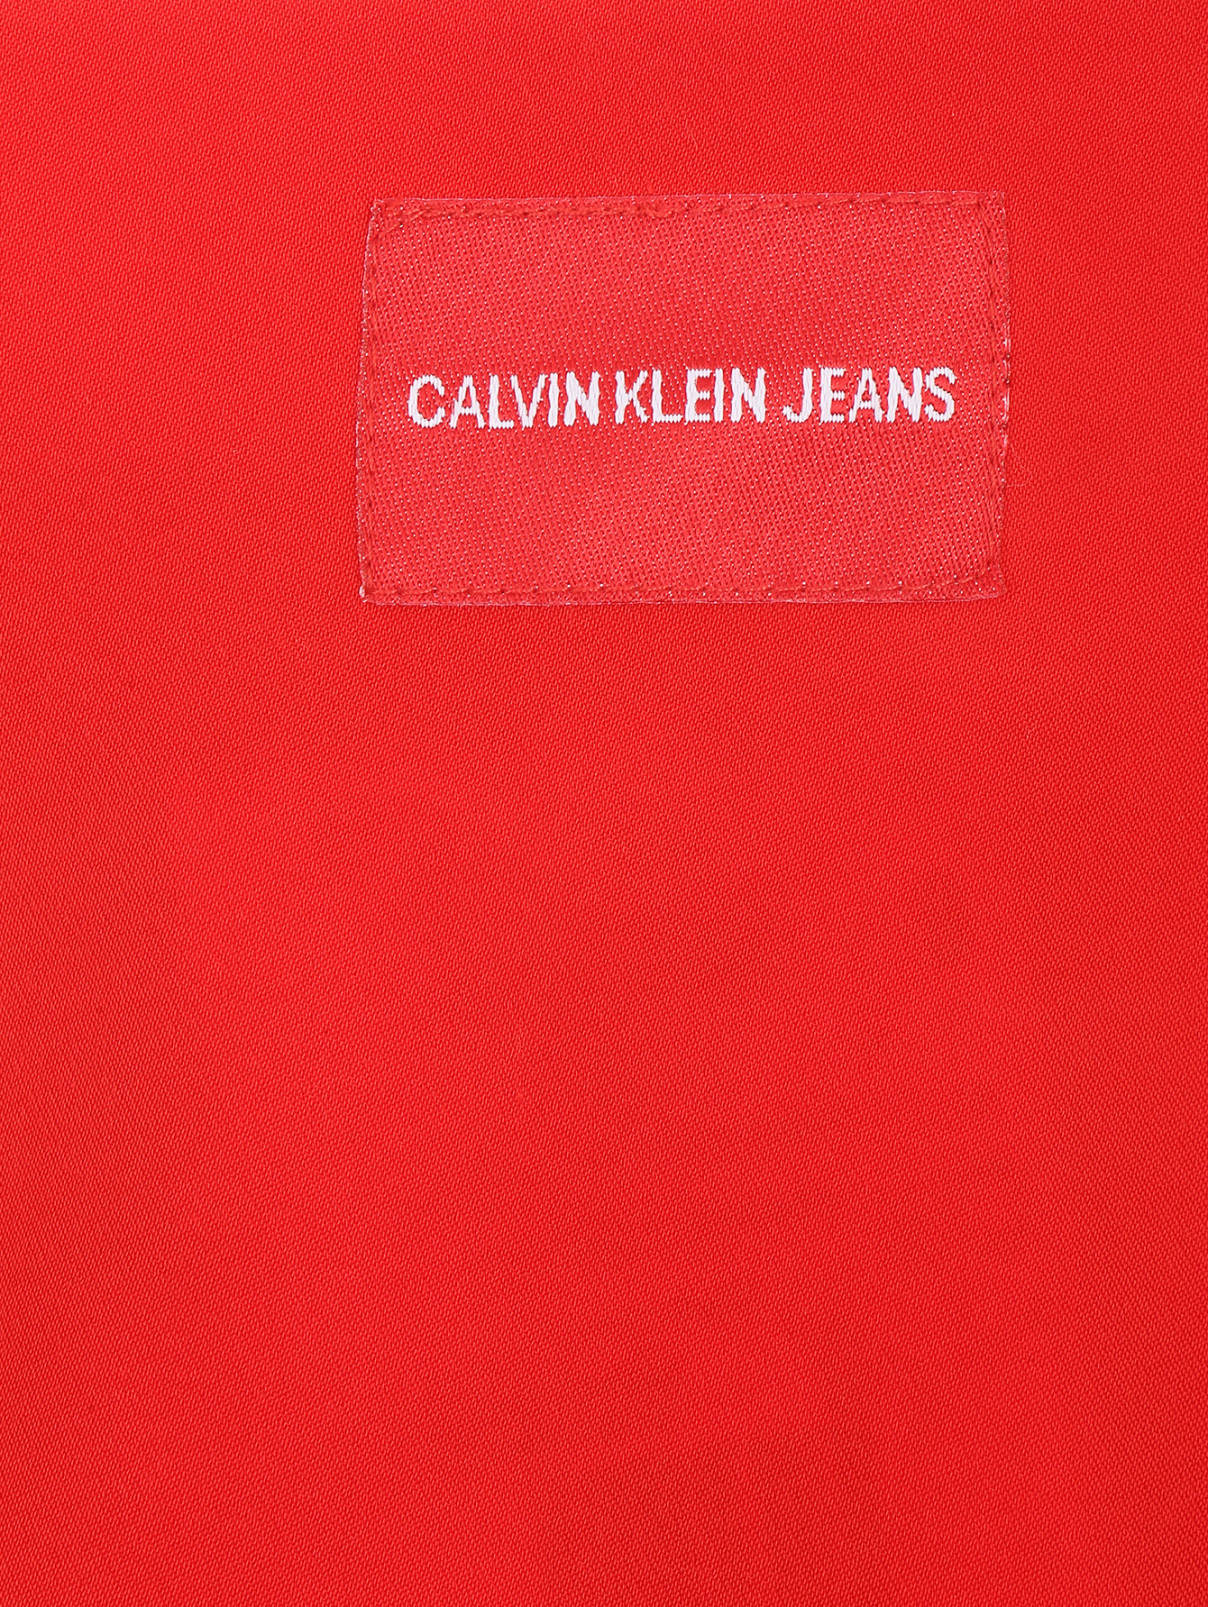 Юбка-мини со складками Calvin Klein Jeans  –  Деталь1  – Цвет:  Красный